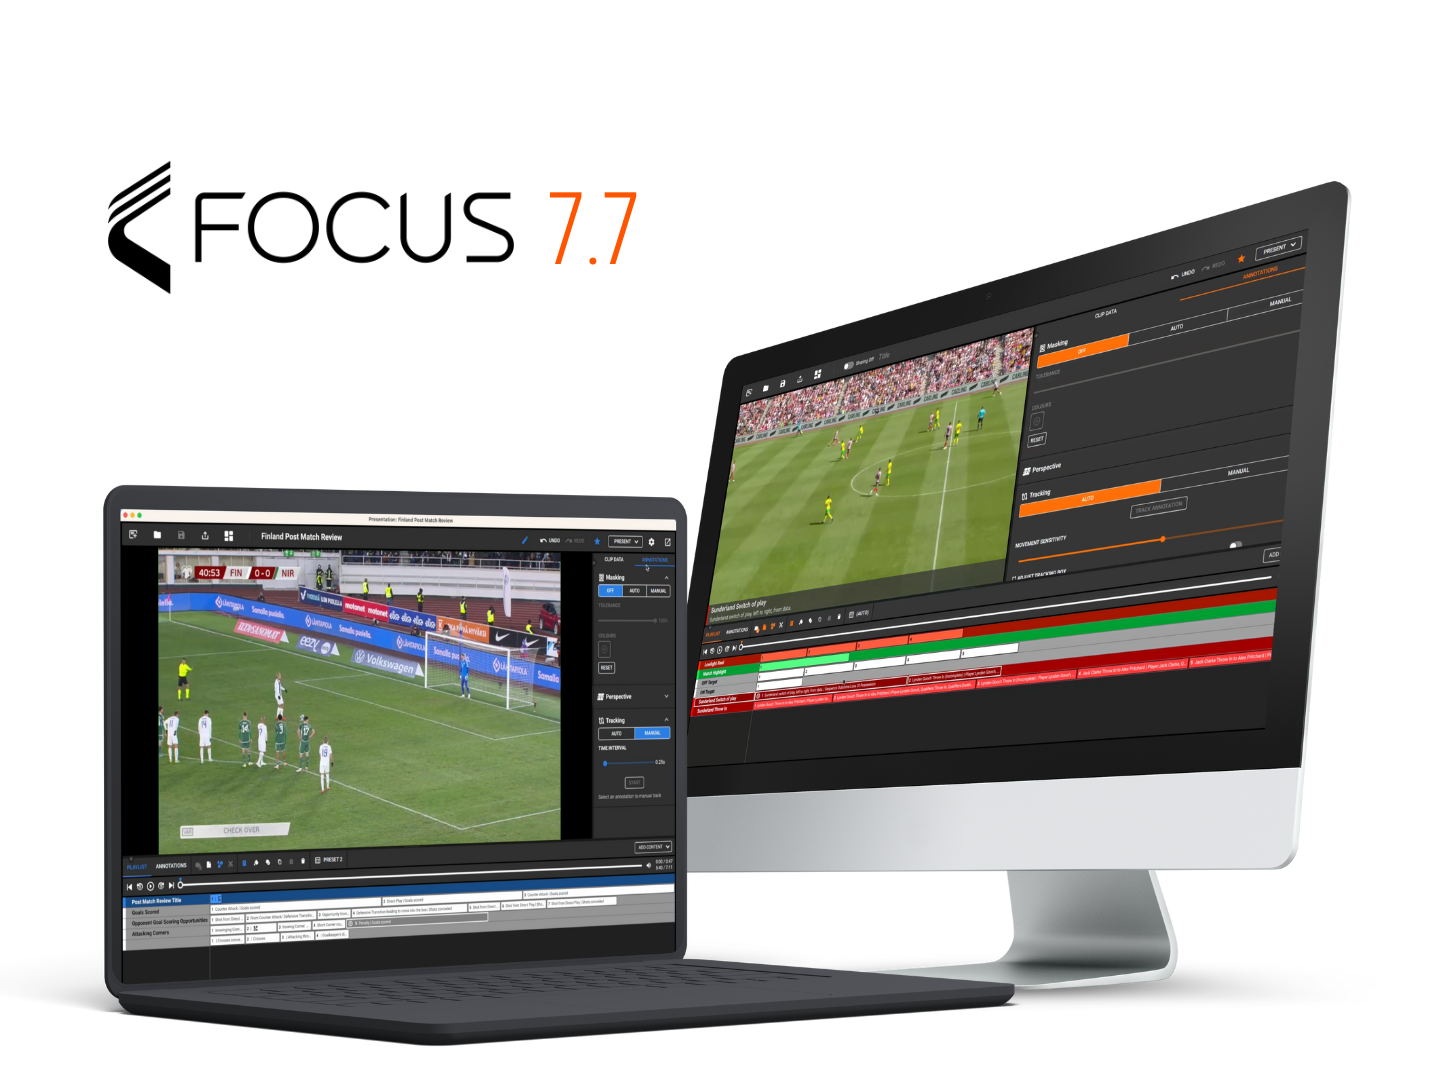 各种设备，包括笔记本电脑、台式电脑和智能手机，显示 Focus 7.7 平台的足球分析界面。这些设备呈圆形排列，背景为橙色。